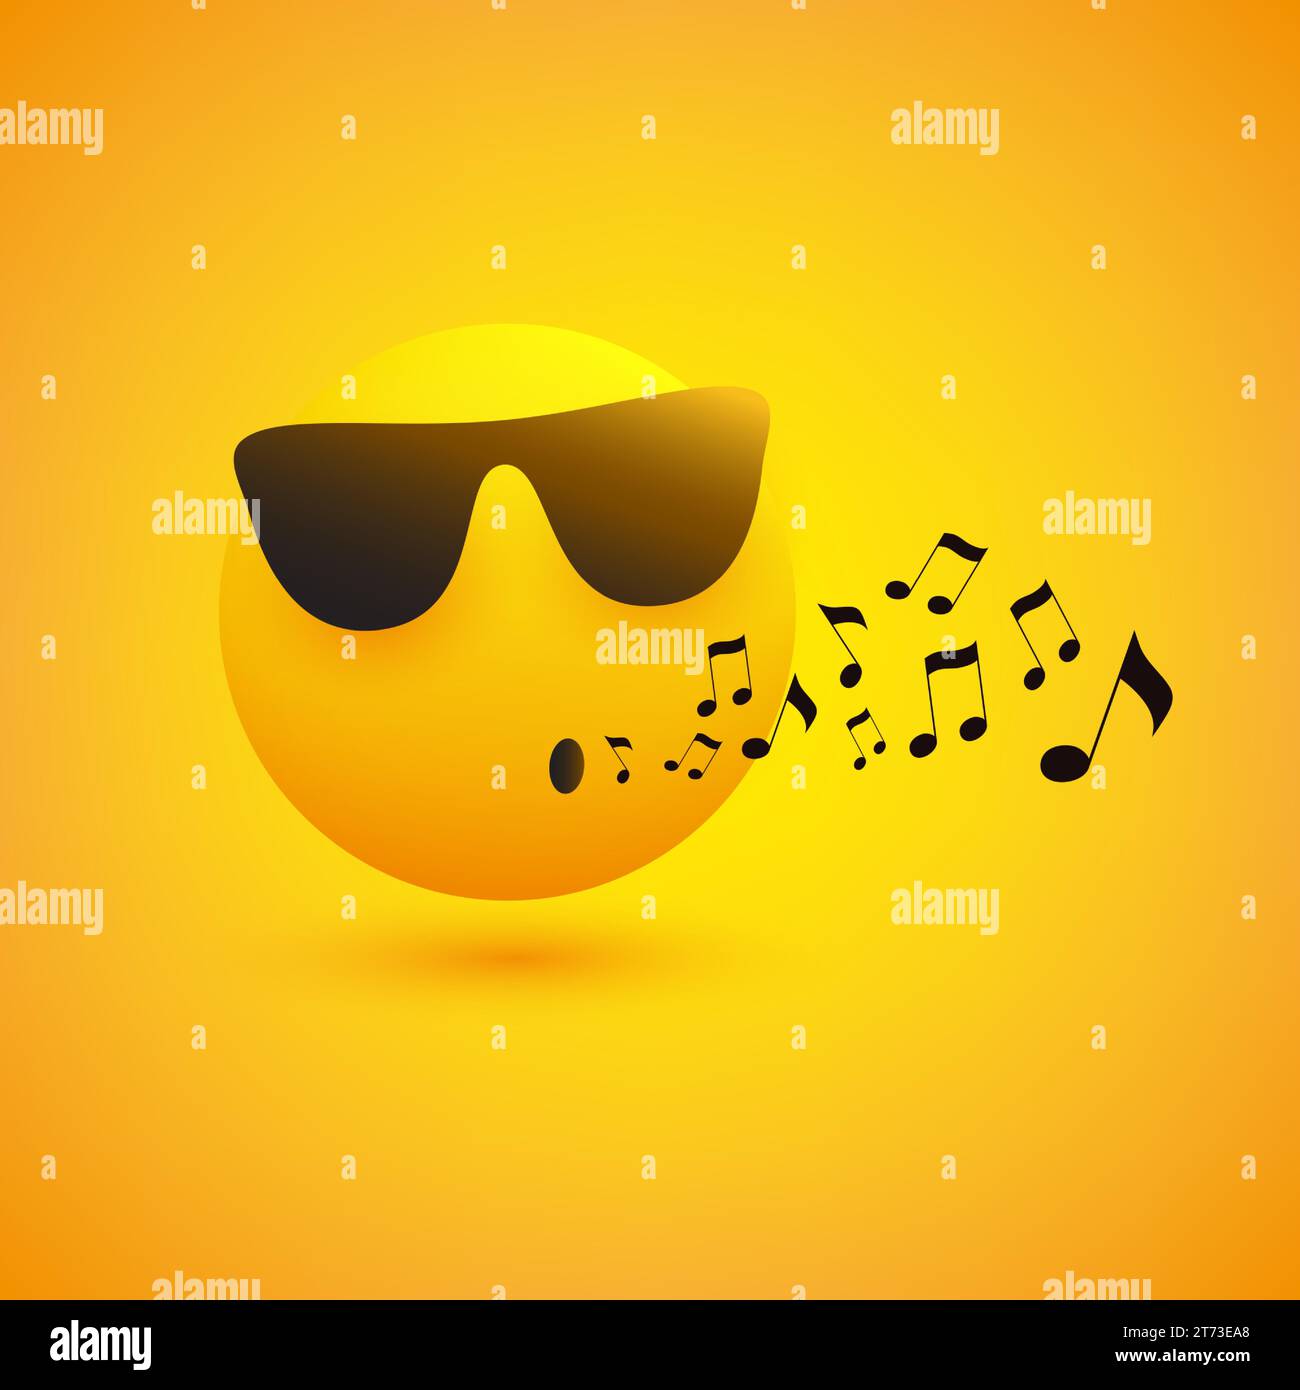 Chanter ou siffler Emoji - visage d'émoticône portant des lunettes de soleil sur fond jaune - concept de conception vectorielle Illustration de Vecteur